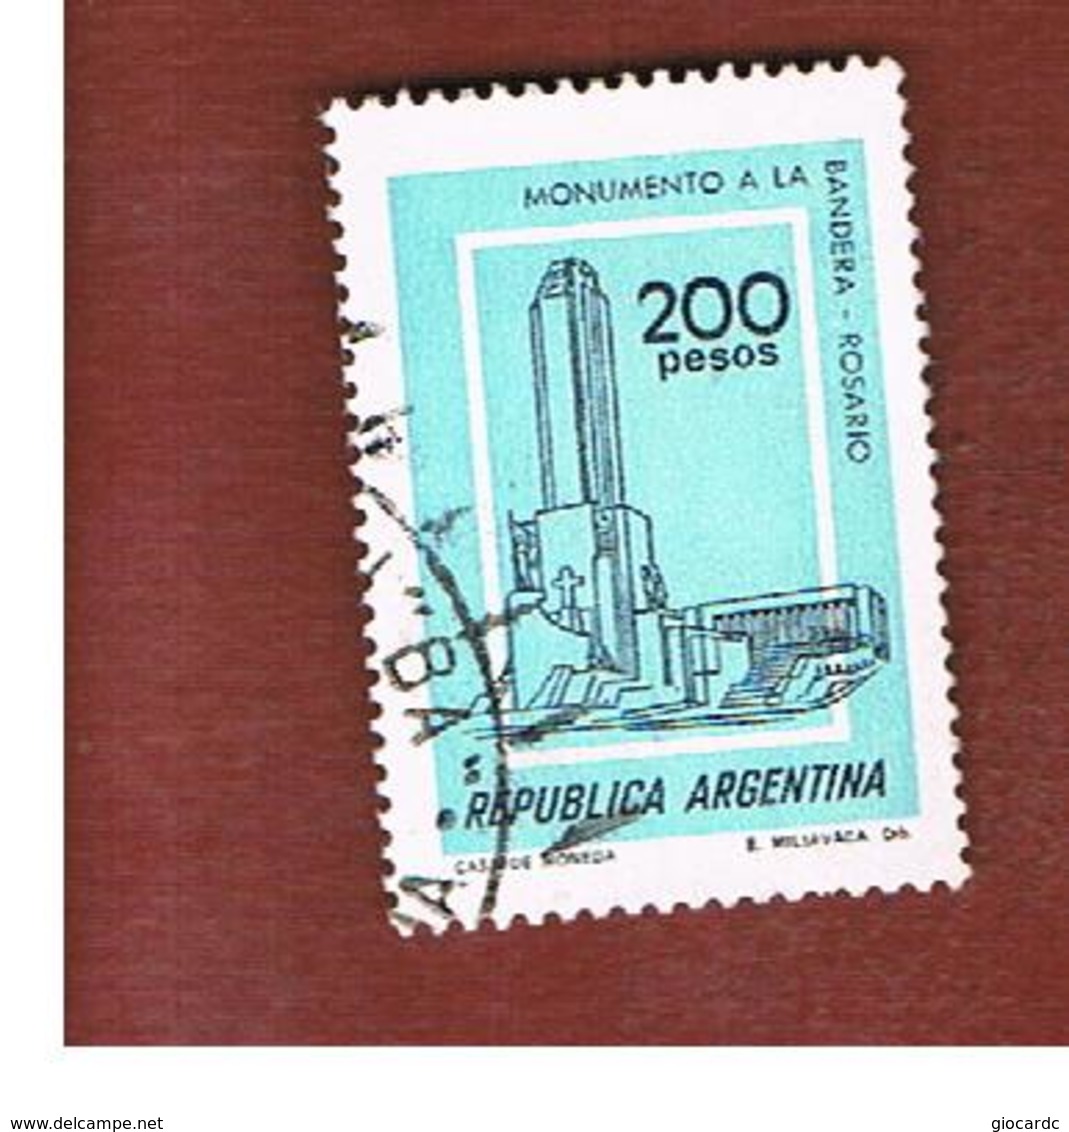 ARGENTINA - SG 1546  - 1977  BUILDINGS:  FLAG MONUMENT, ROSARIO   -   USED ° - Usati